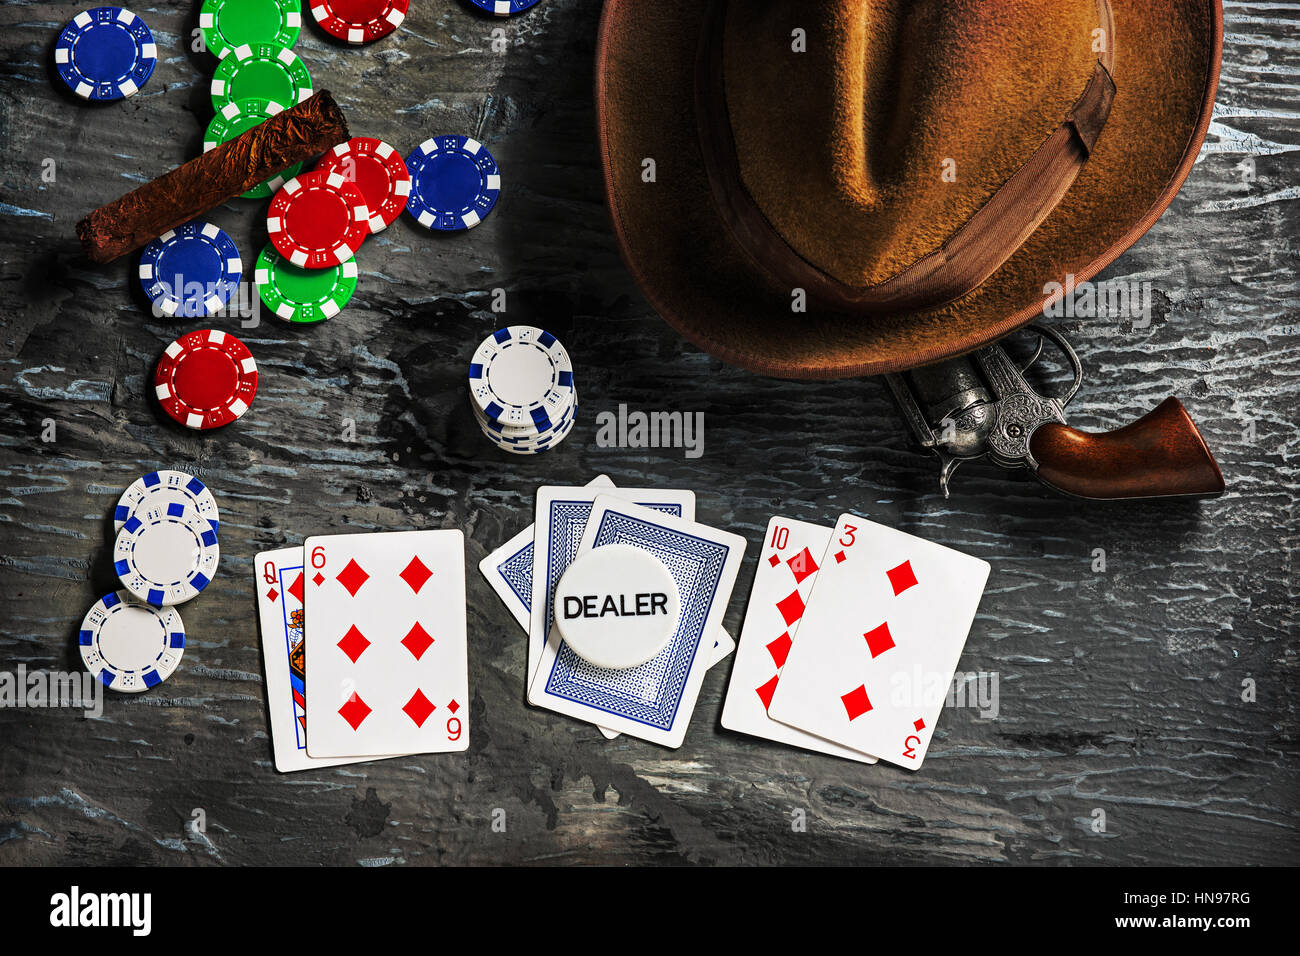 Азартные игры напитки. Карточный стол вид сверху. Скандинавские азартные игры. Игральные карты World Poker Tour. Фото азартные игры подпольно.